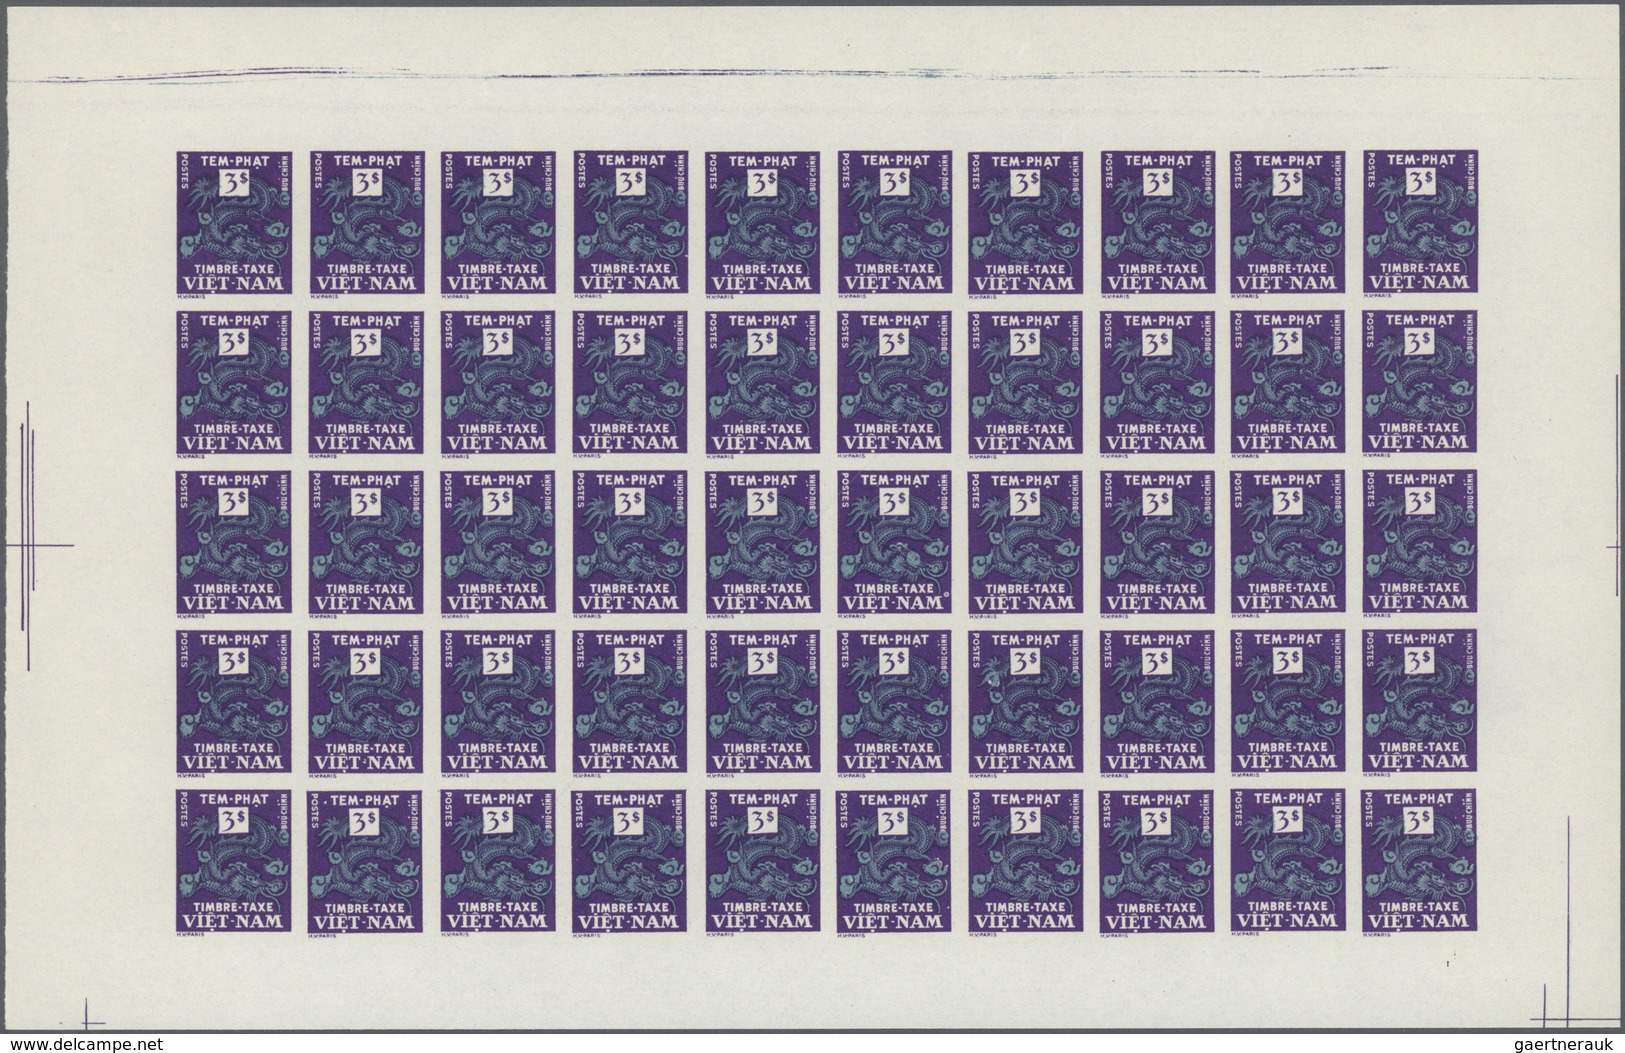 Vietnam-Süd - Portomarken: 1955/1956. 6 panneaux complets de 50 avec marges non dentelés. (non réper